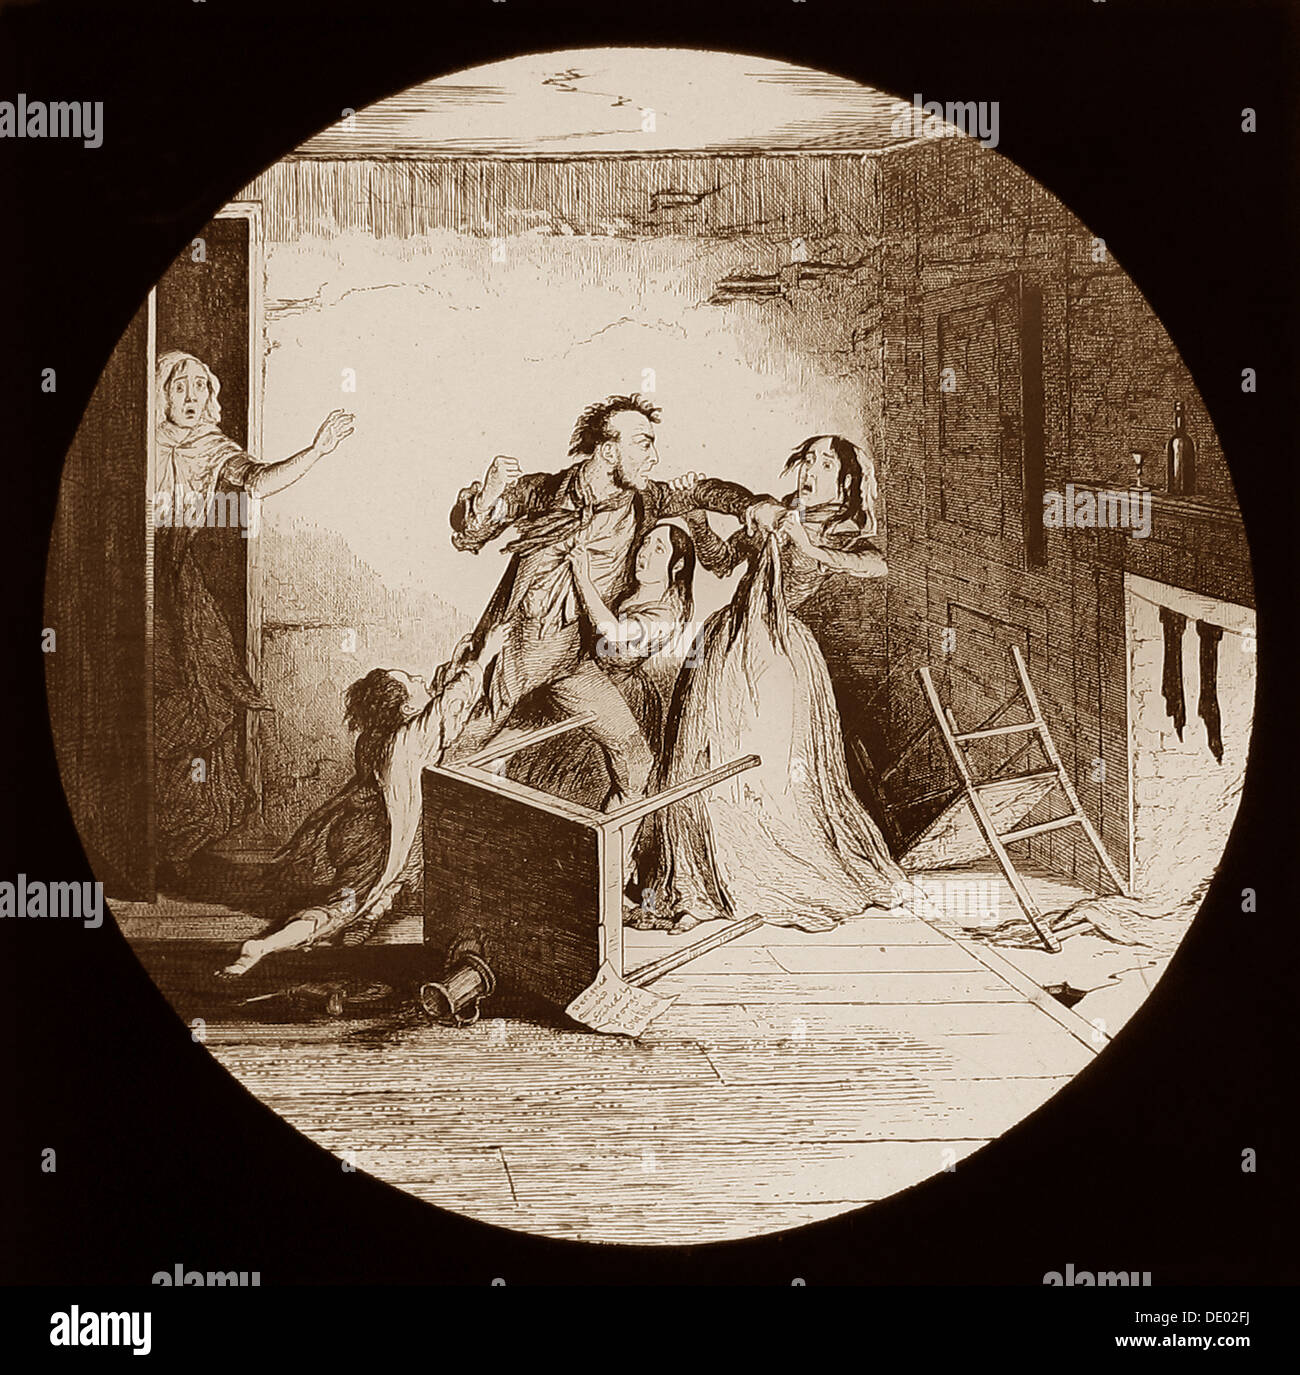 La bouteille - Une Temperance histoire écrite par George Cruikshank publié en 1847 - prises à partir de diapositives de lanterne magique - diapositive n°6 Banque D'Images